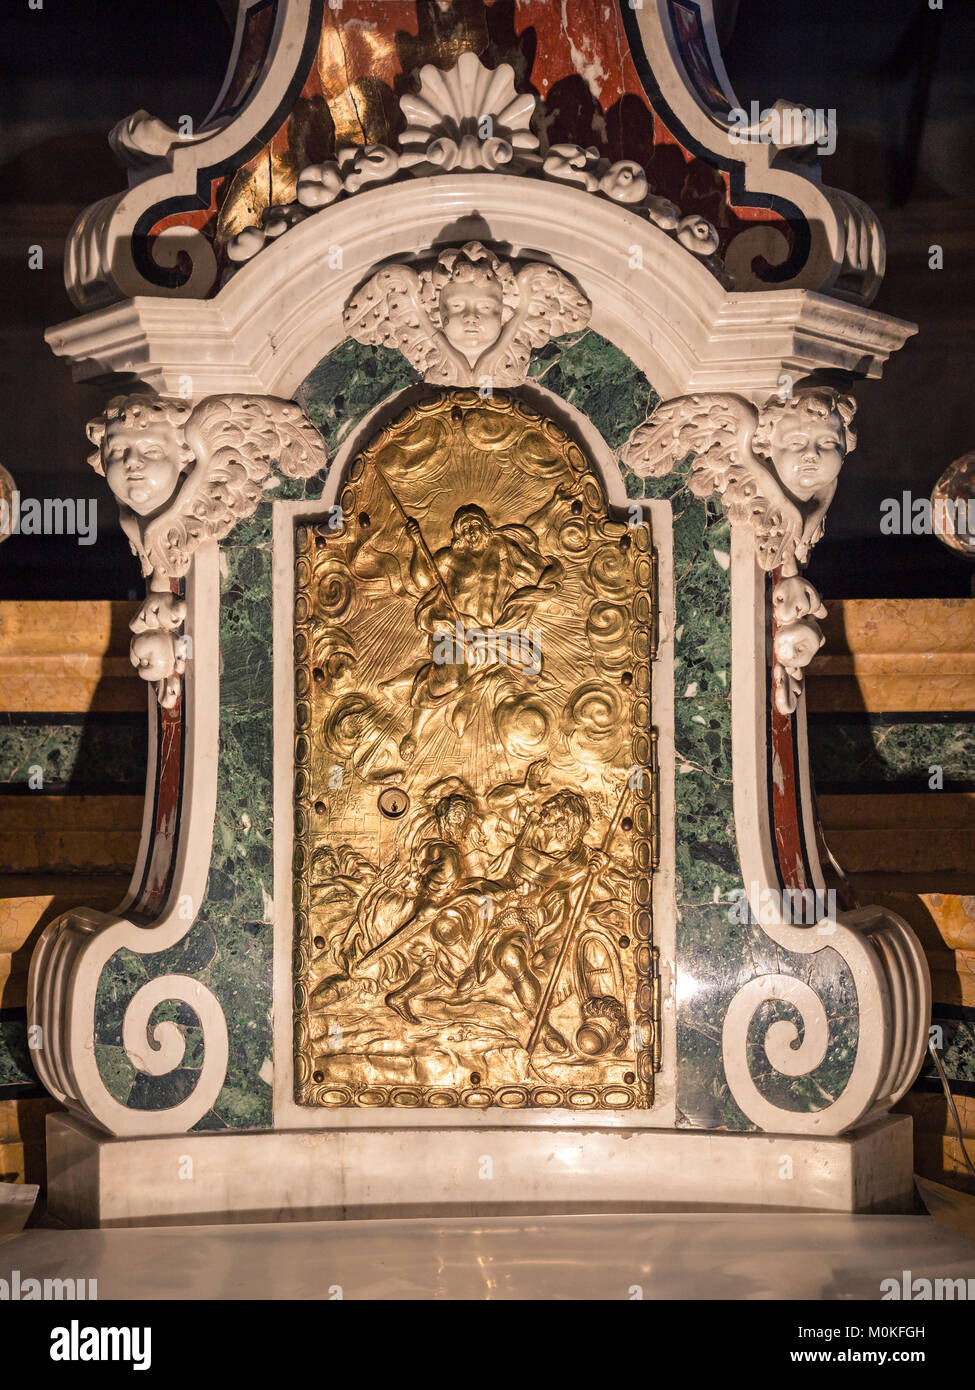 Dettaglio di un tabernacolo in una chiesa cattolica nella quale